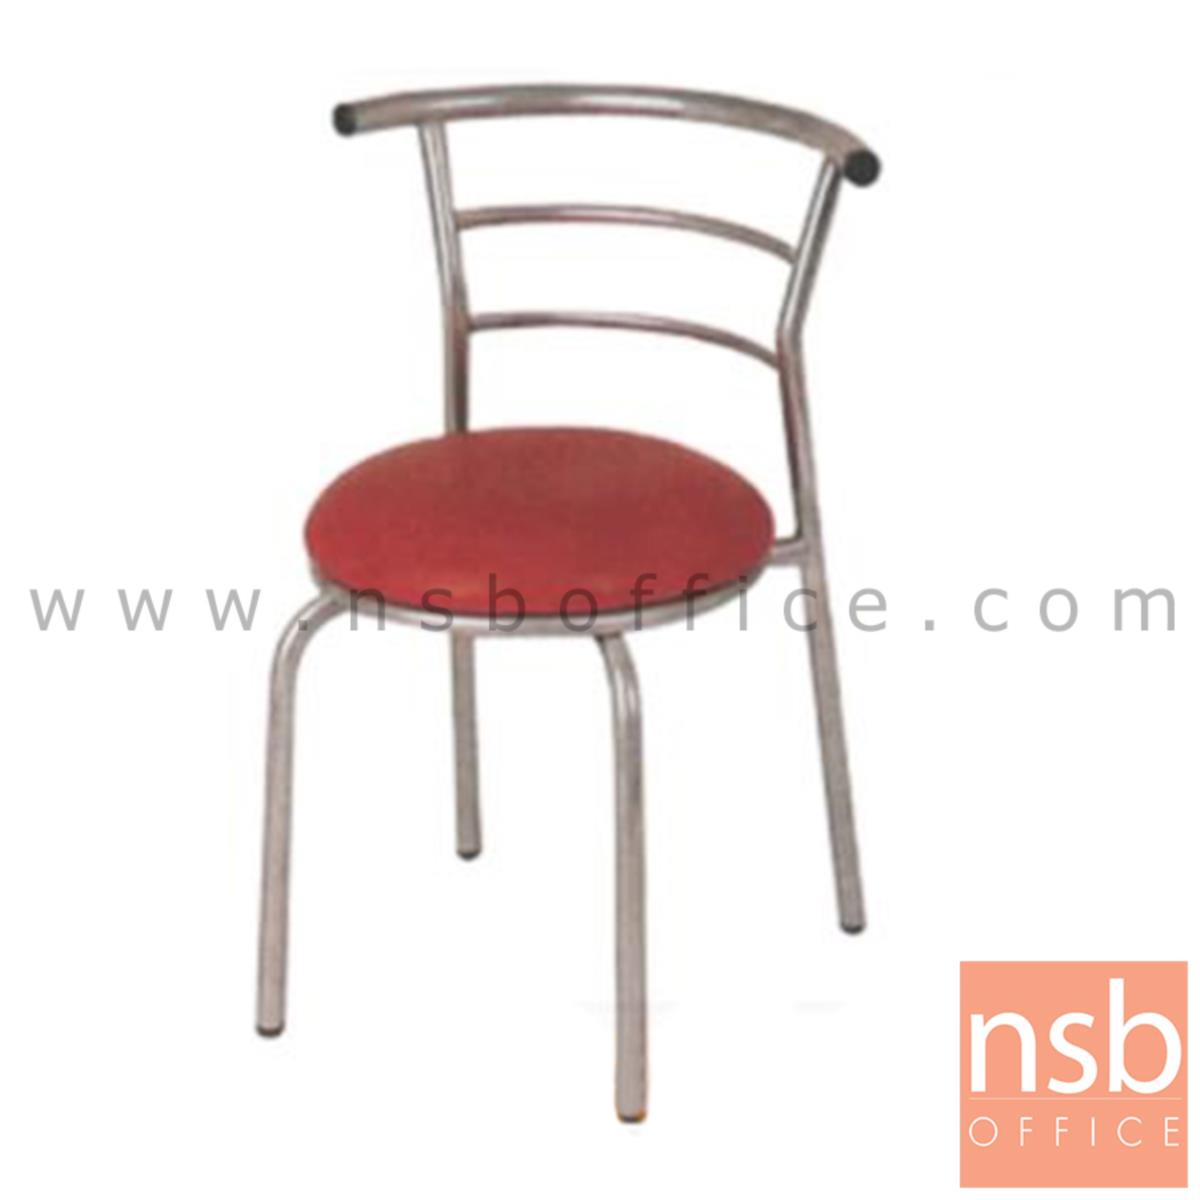 B05A077:เก้าอี้อเนกประสงค์ รุ่น  KSS-83A  ขาเหล็กชุบโครเมี่ยม